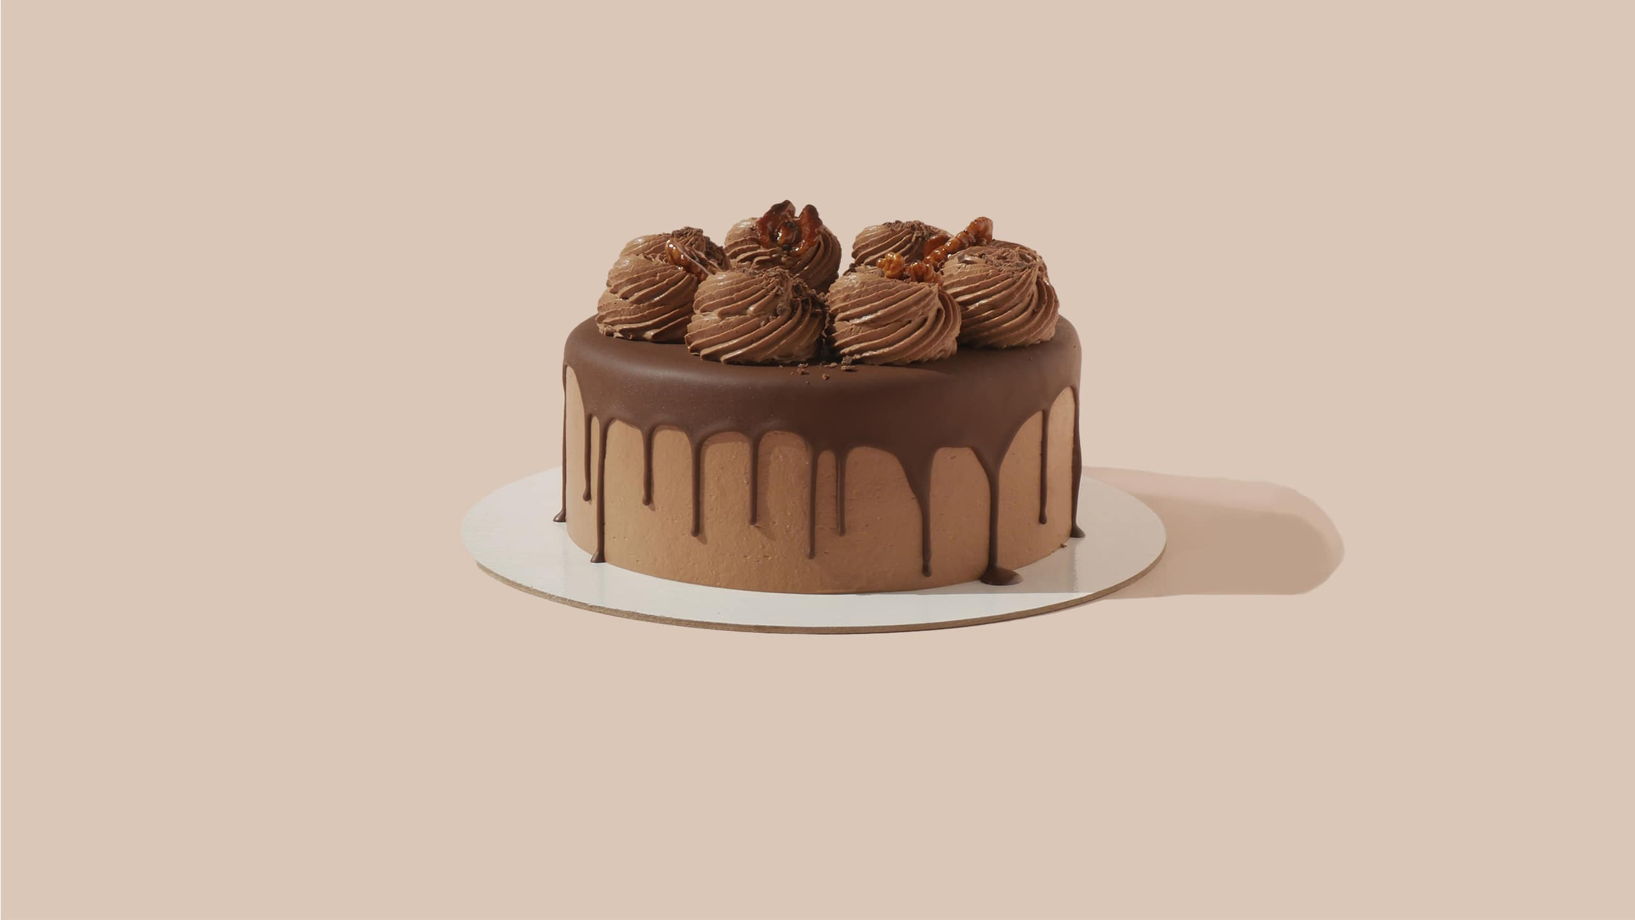 Безглютеновый веганский торт "Шоколадный Брауни"